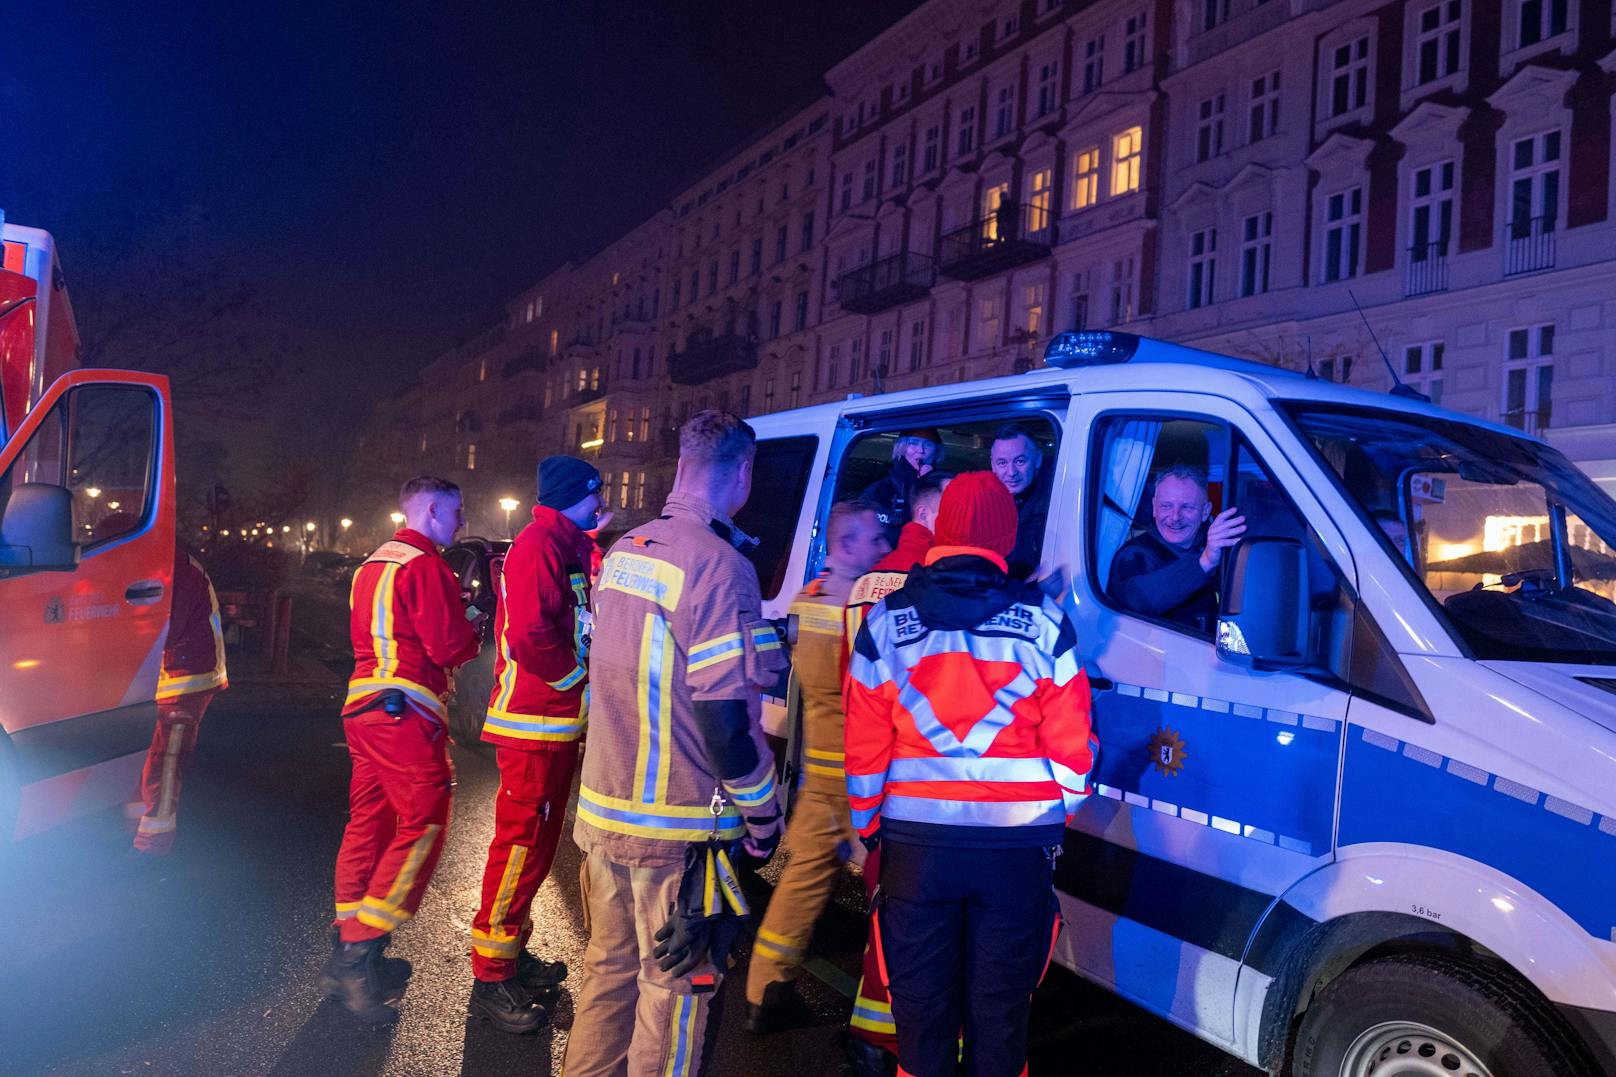 300 Festnahmen und mehrere verletzte Beamte – dies ist die erste Zwischenbilanz der Polizei Berlin aus der Silvesternacht.